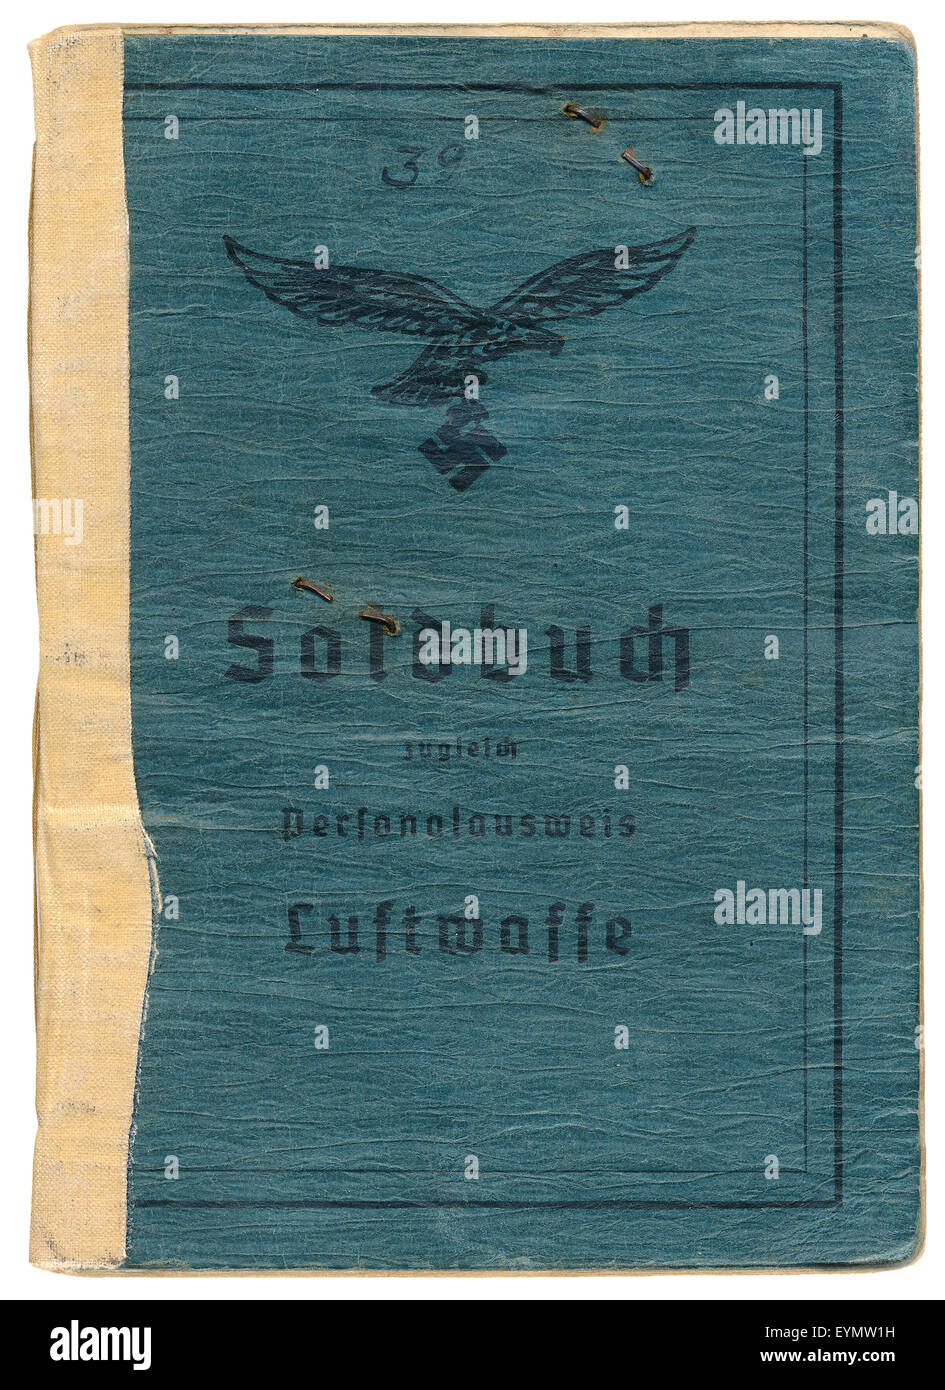 Personalausweis der Bundeswehr, 1943, Deutsches Reich, Europa, Stockfoto